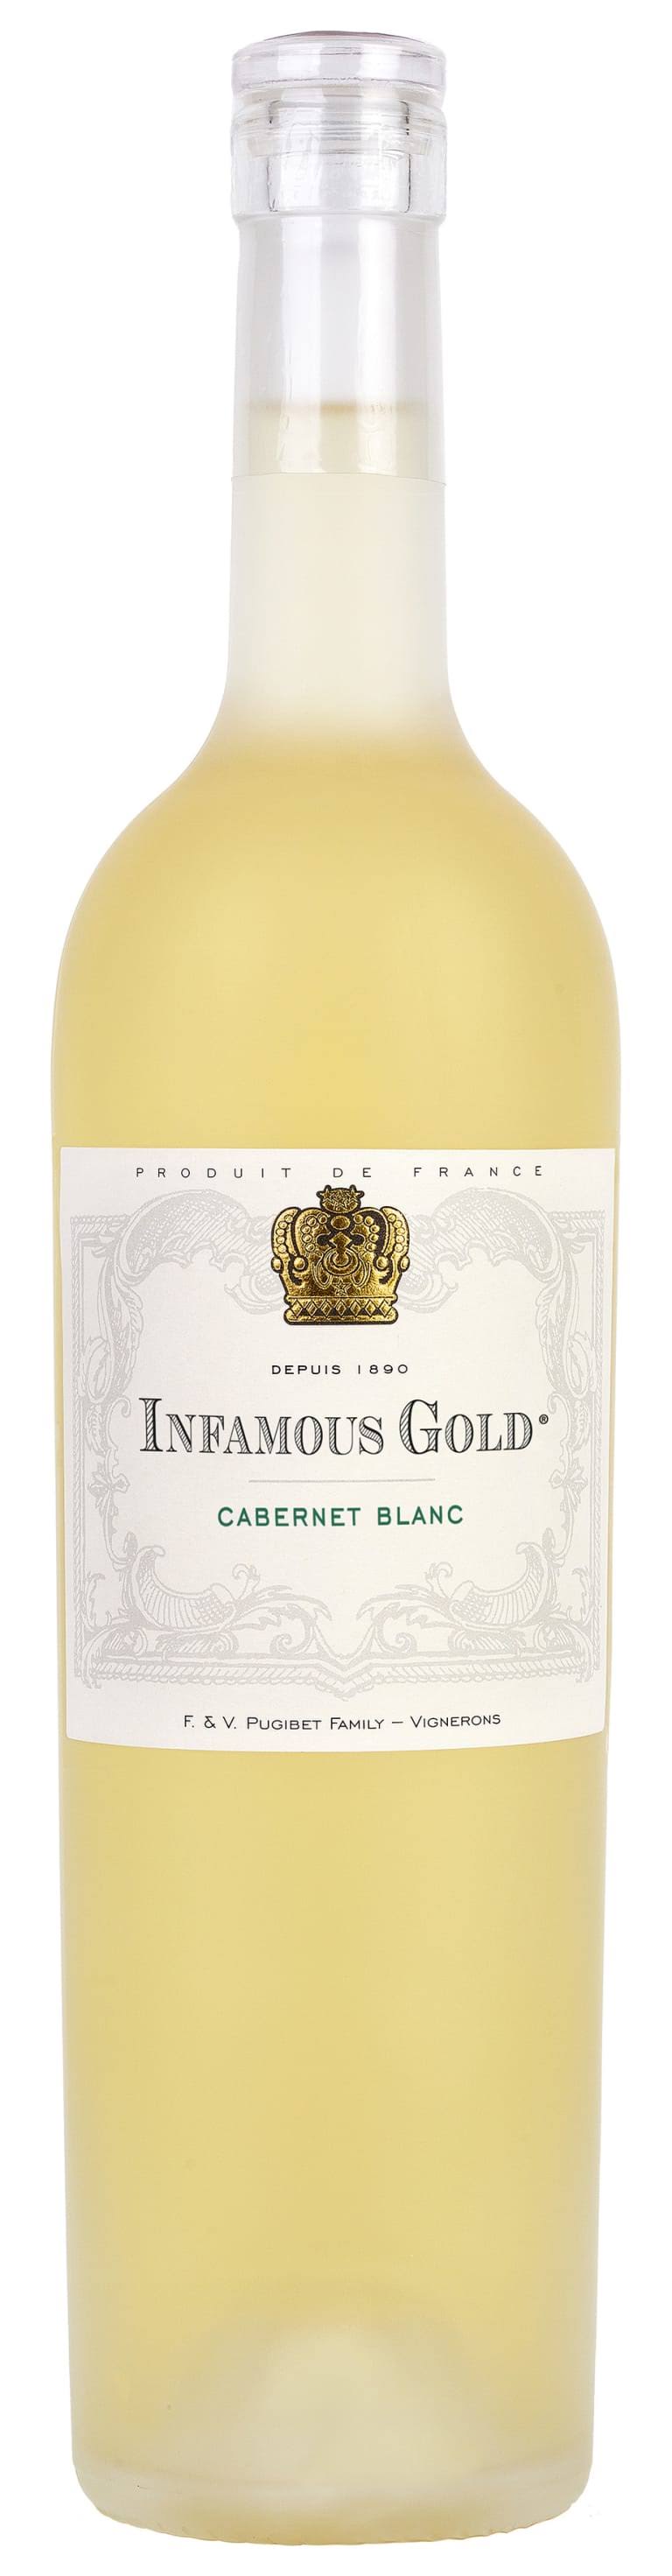 Infamouis Gold Cabernet Blanc